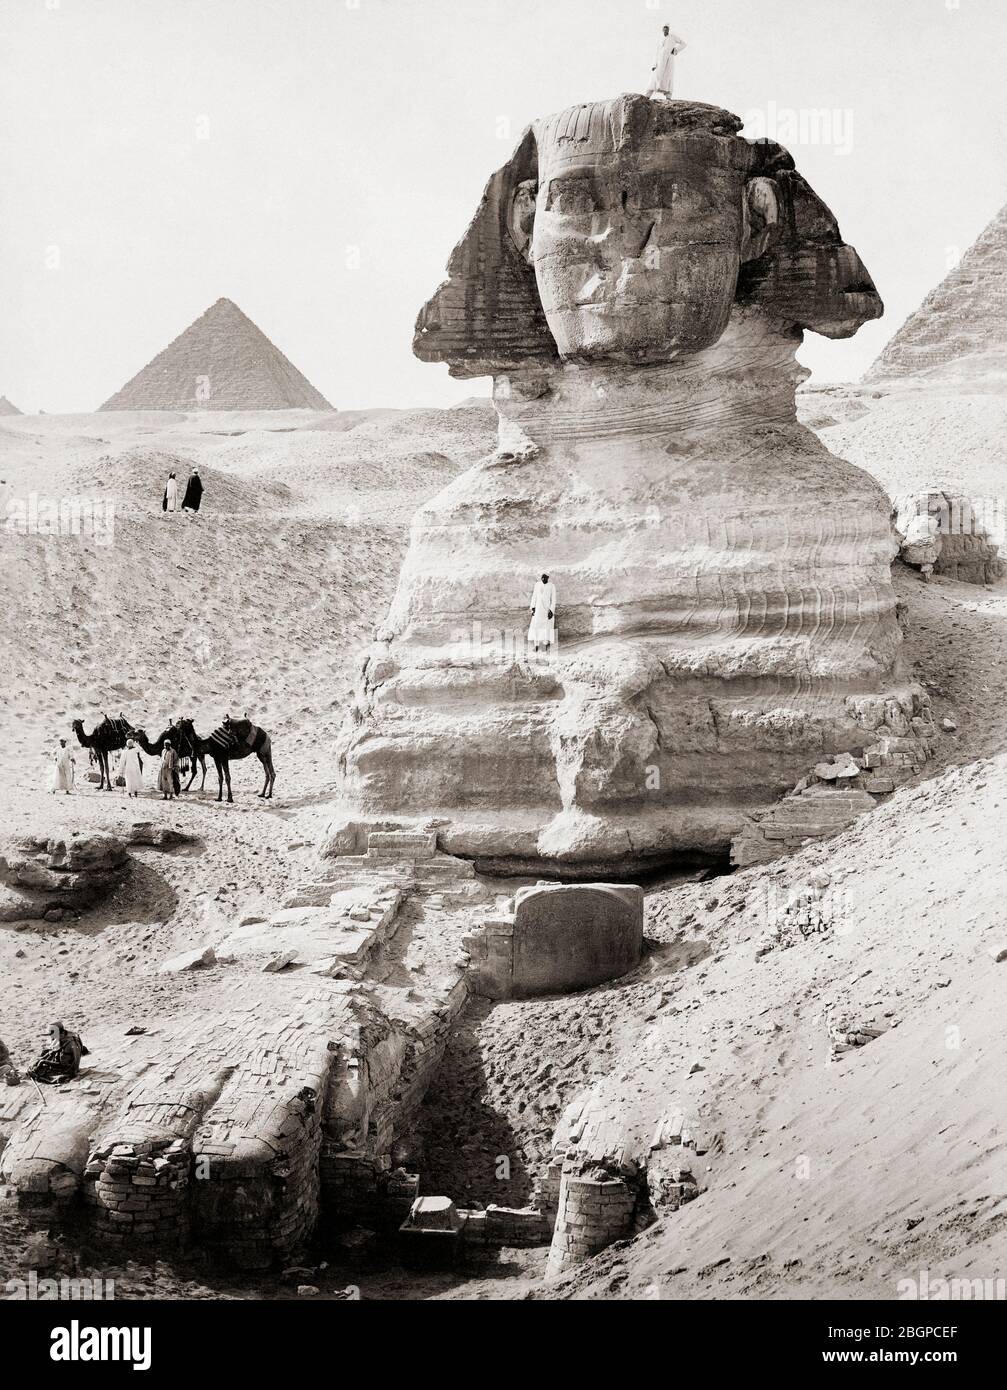 Le Grand Sphinx, Giza, Egypte. Après une oeuvre de la fin du XIXe siècle du photographe syriaque-arménien Jean Pascal Sebah, 1872 - 1947. Banque D'Images